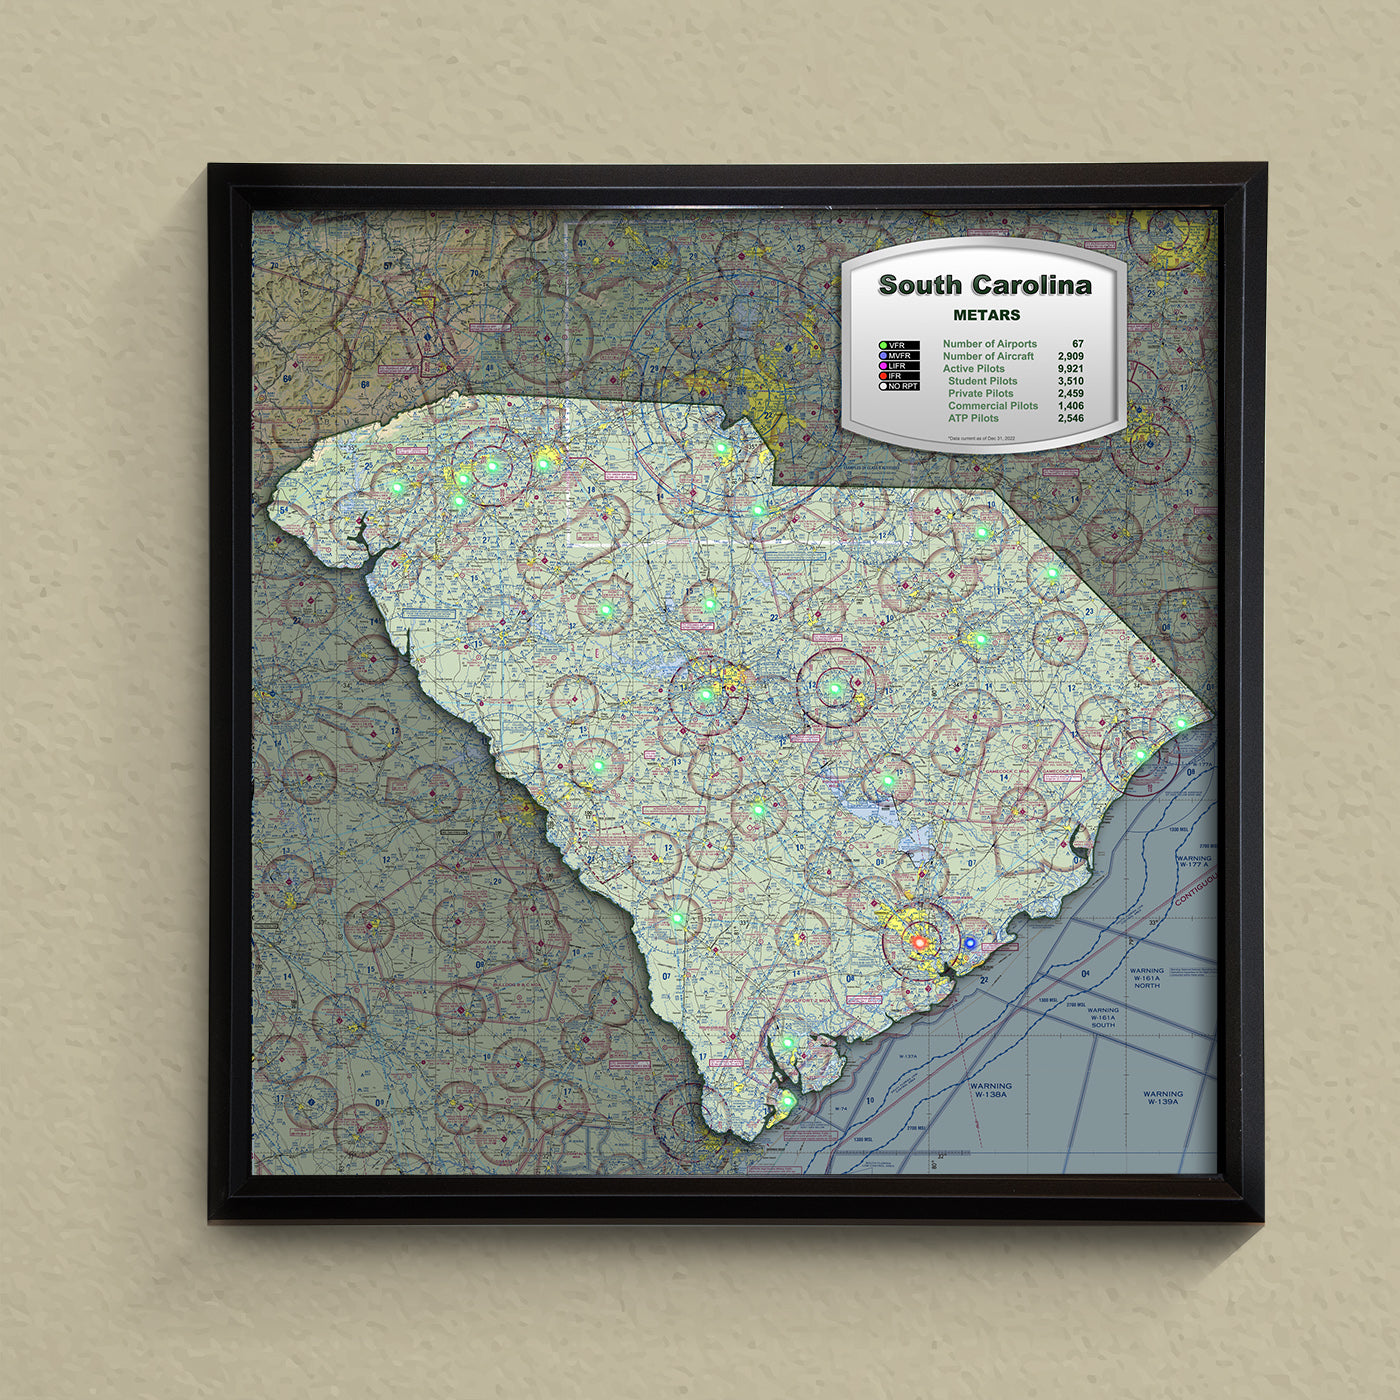 State METAR Map - South Carolina